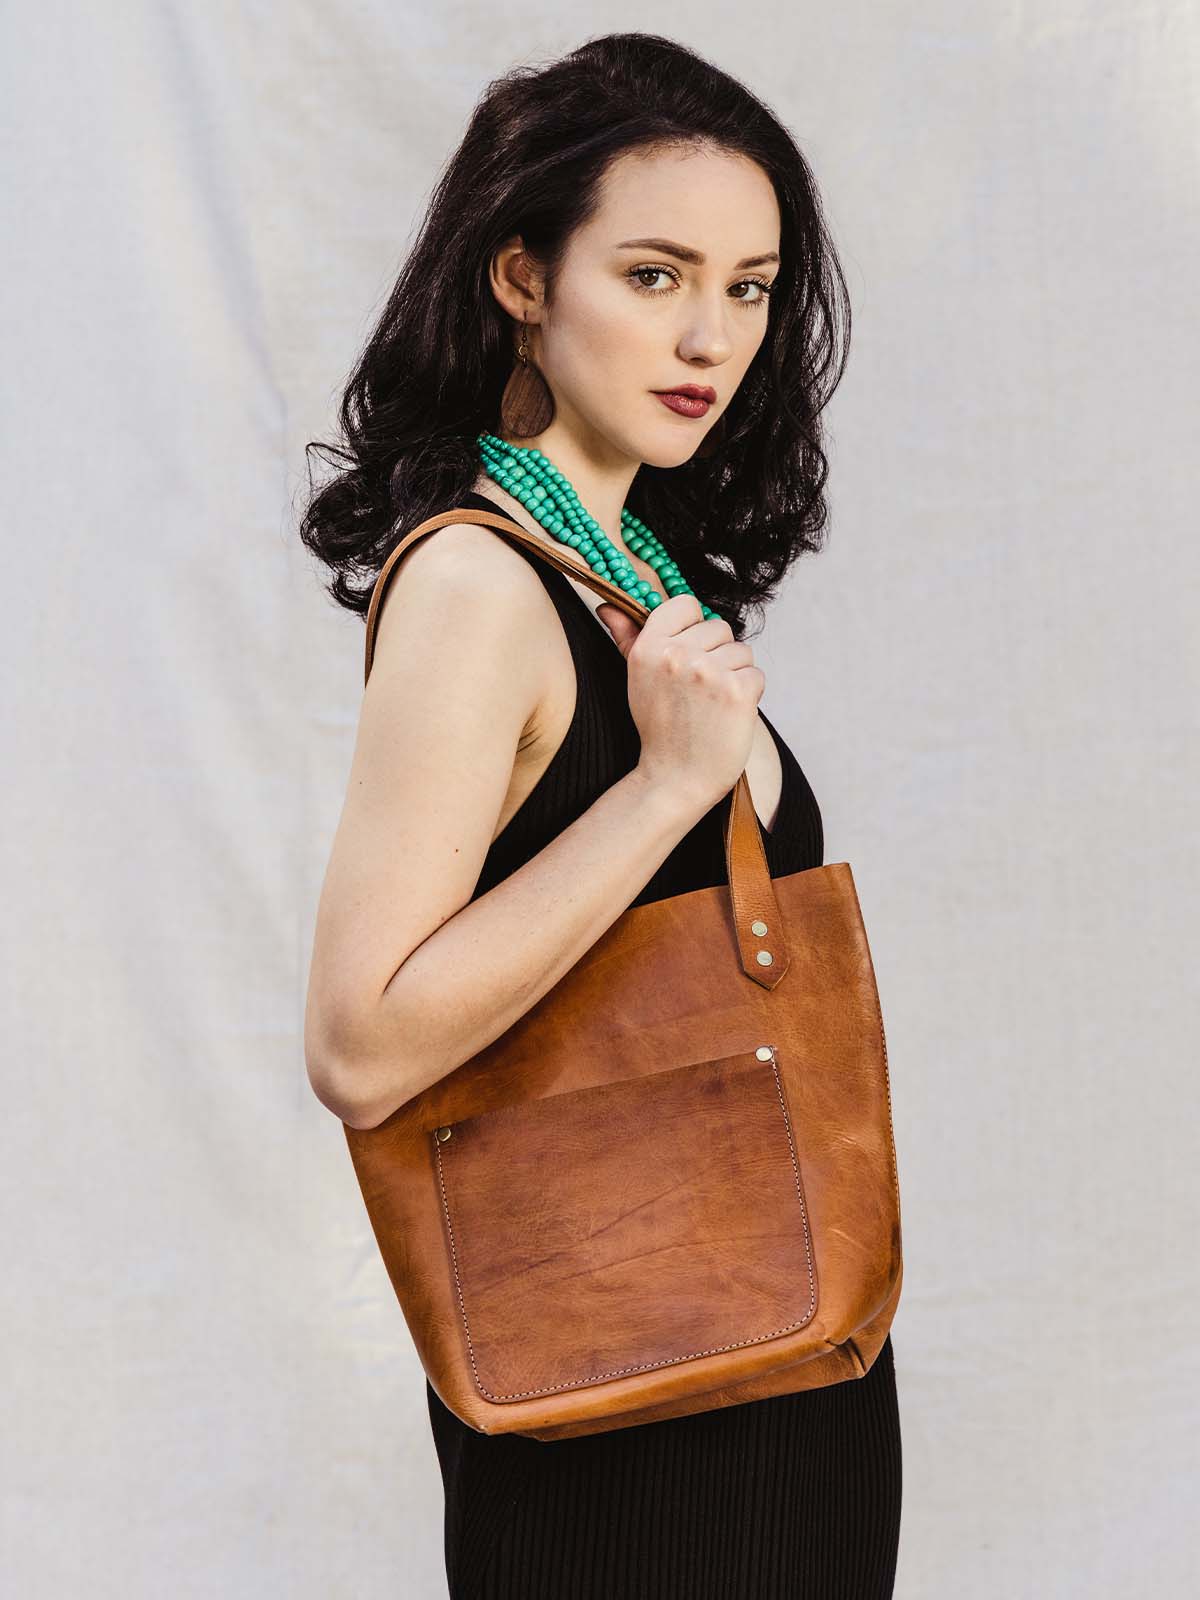 Female model holding hazelnut colored leather handbag over the shoulder.